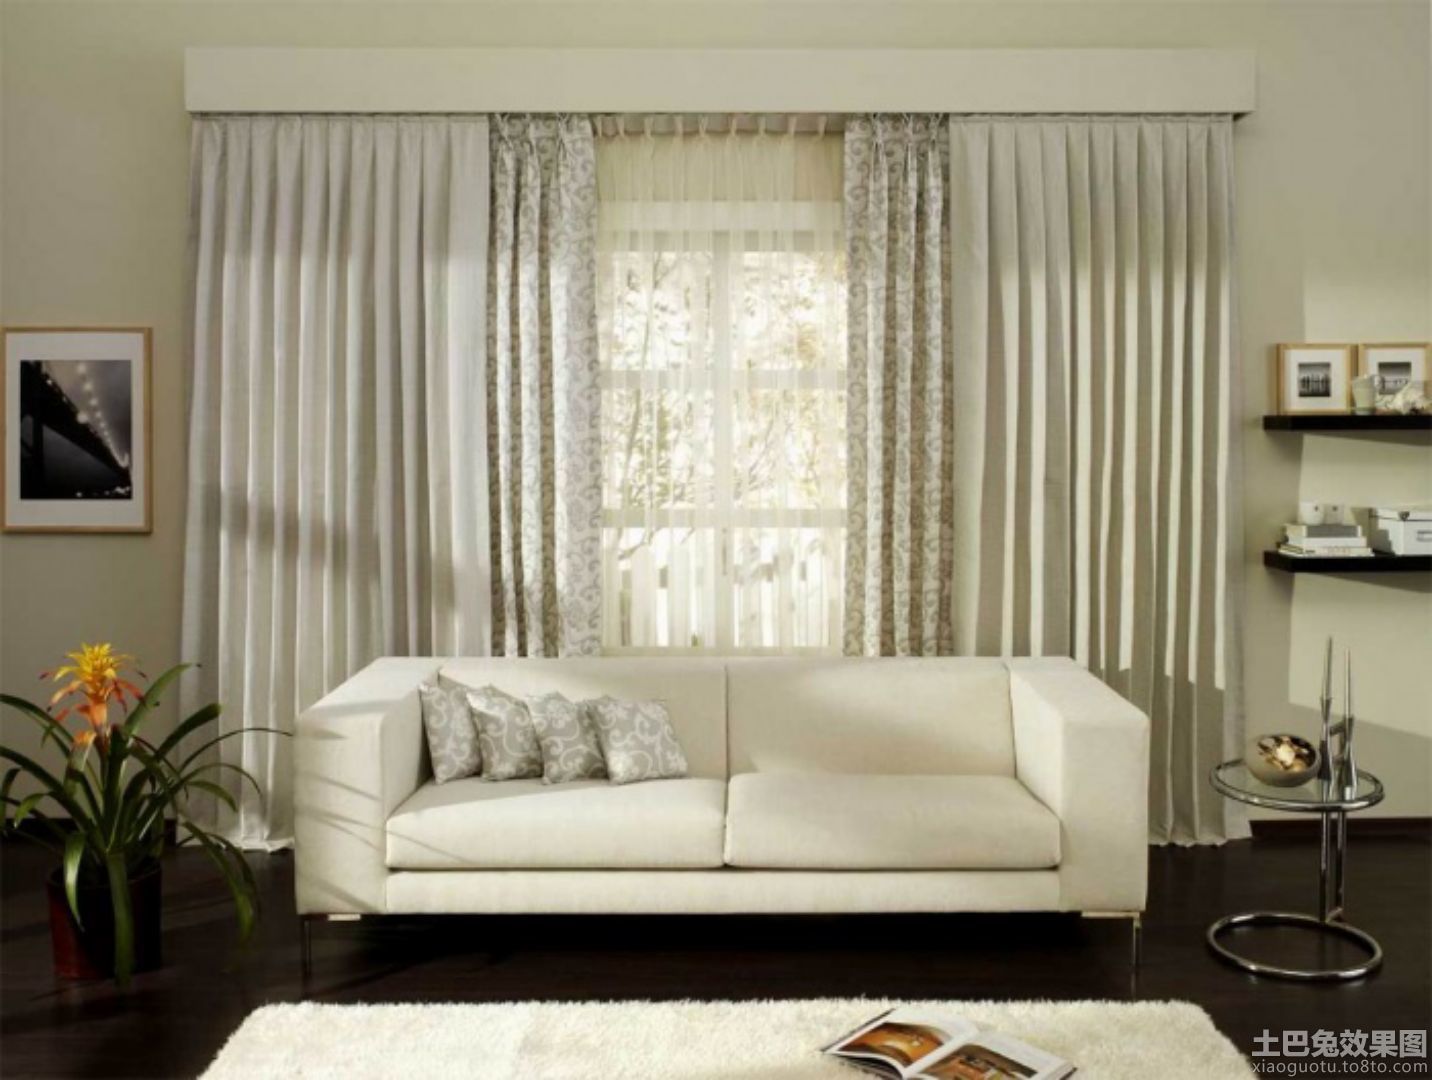 【贝贝】厂家直销 外贸窗帘 客厅阳台窗纱 纯色窗帘-阿里巴巴